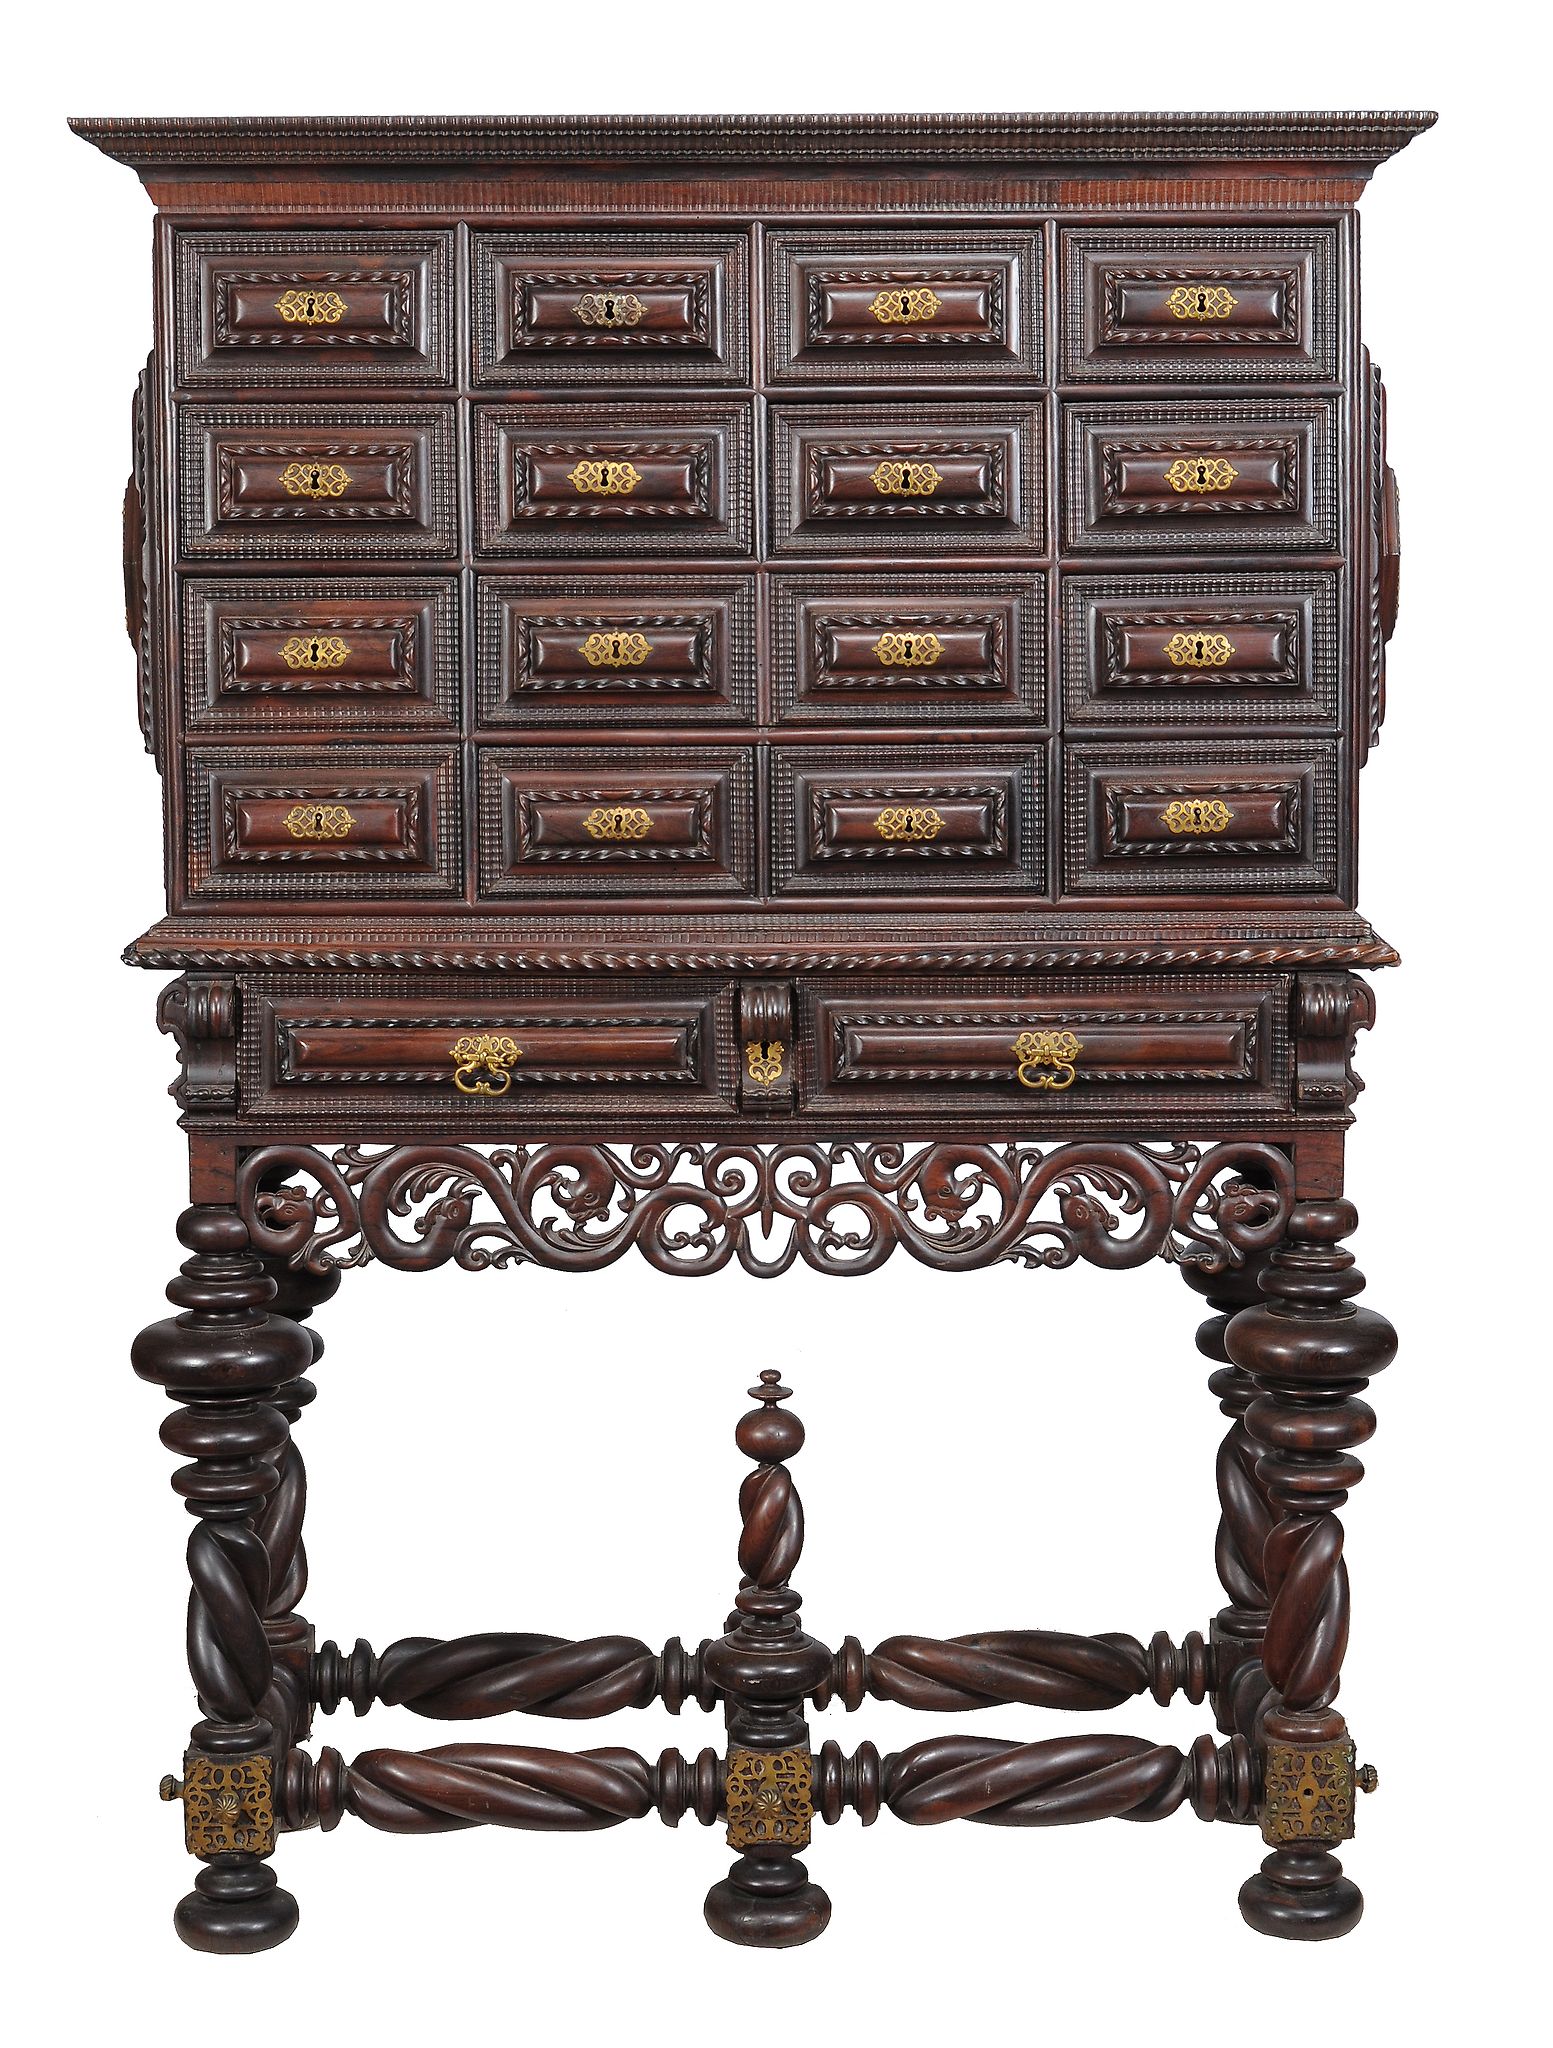 Ω A Portuguese rosewood and gilt metal mounted cabinet on stand, mid 18th century, decorated with - Image 2 of 3